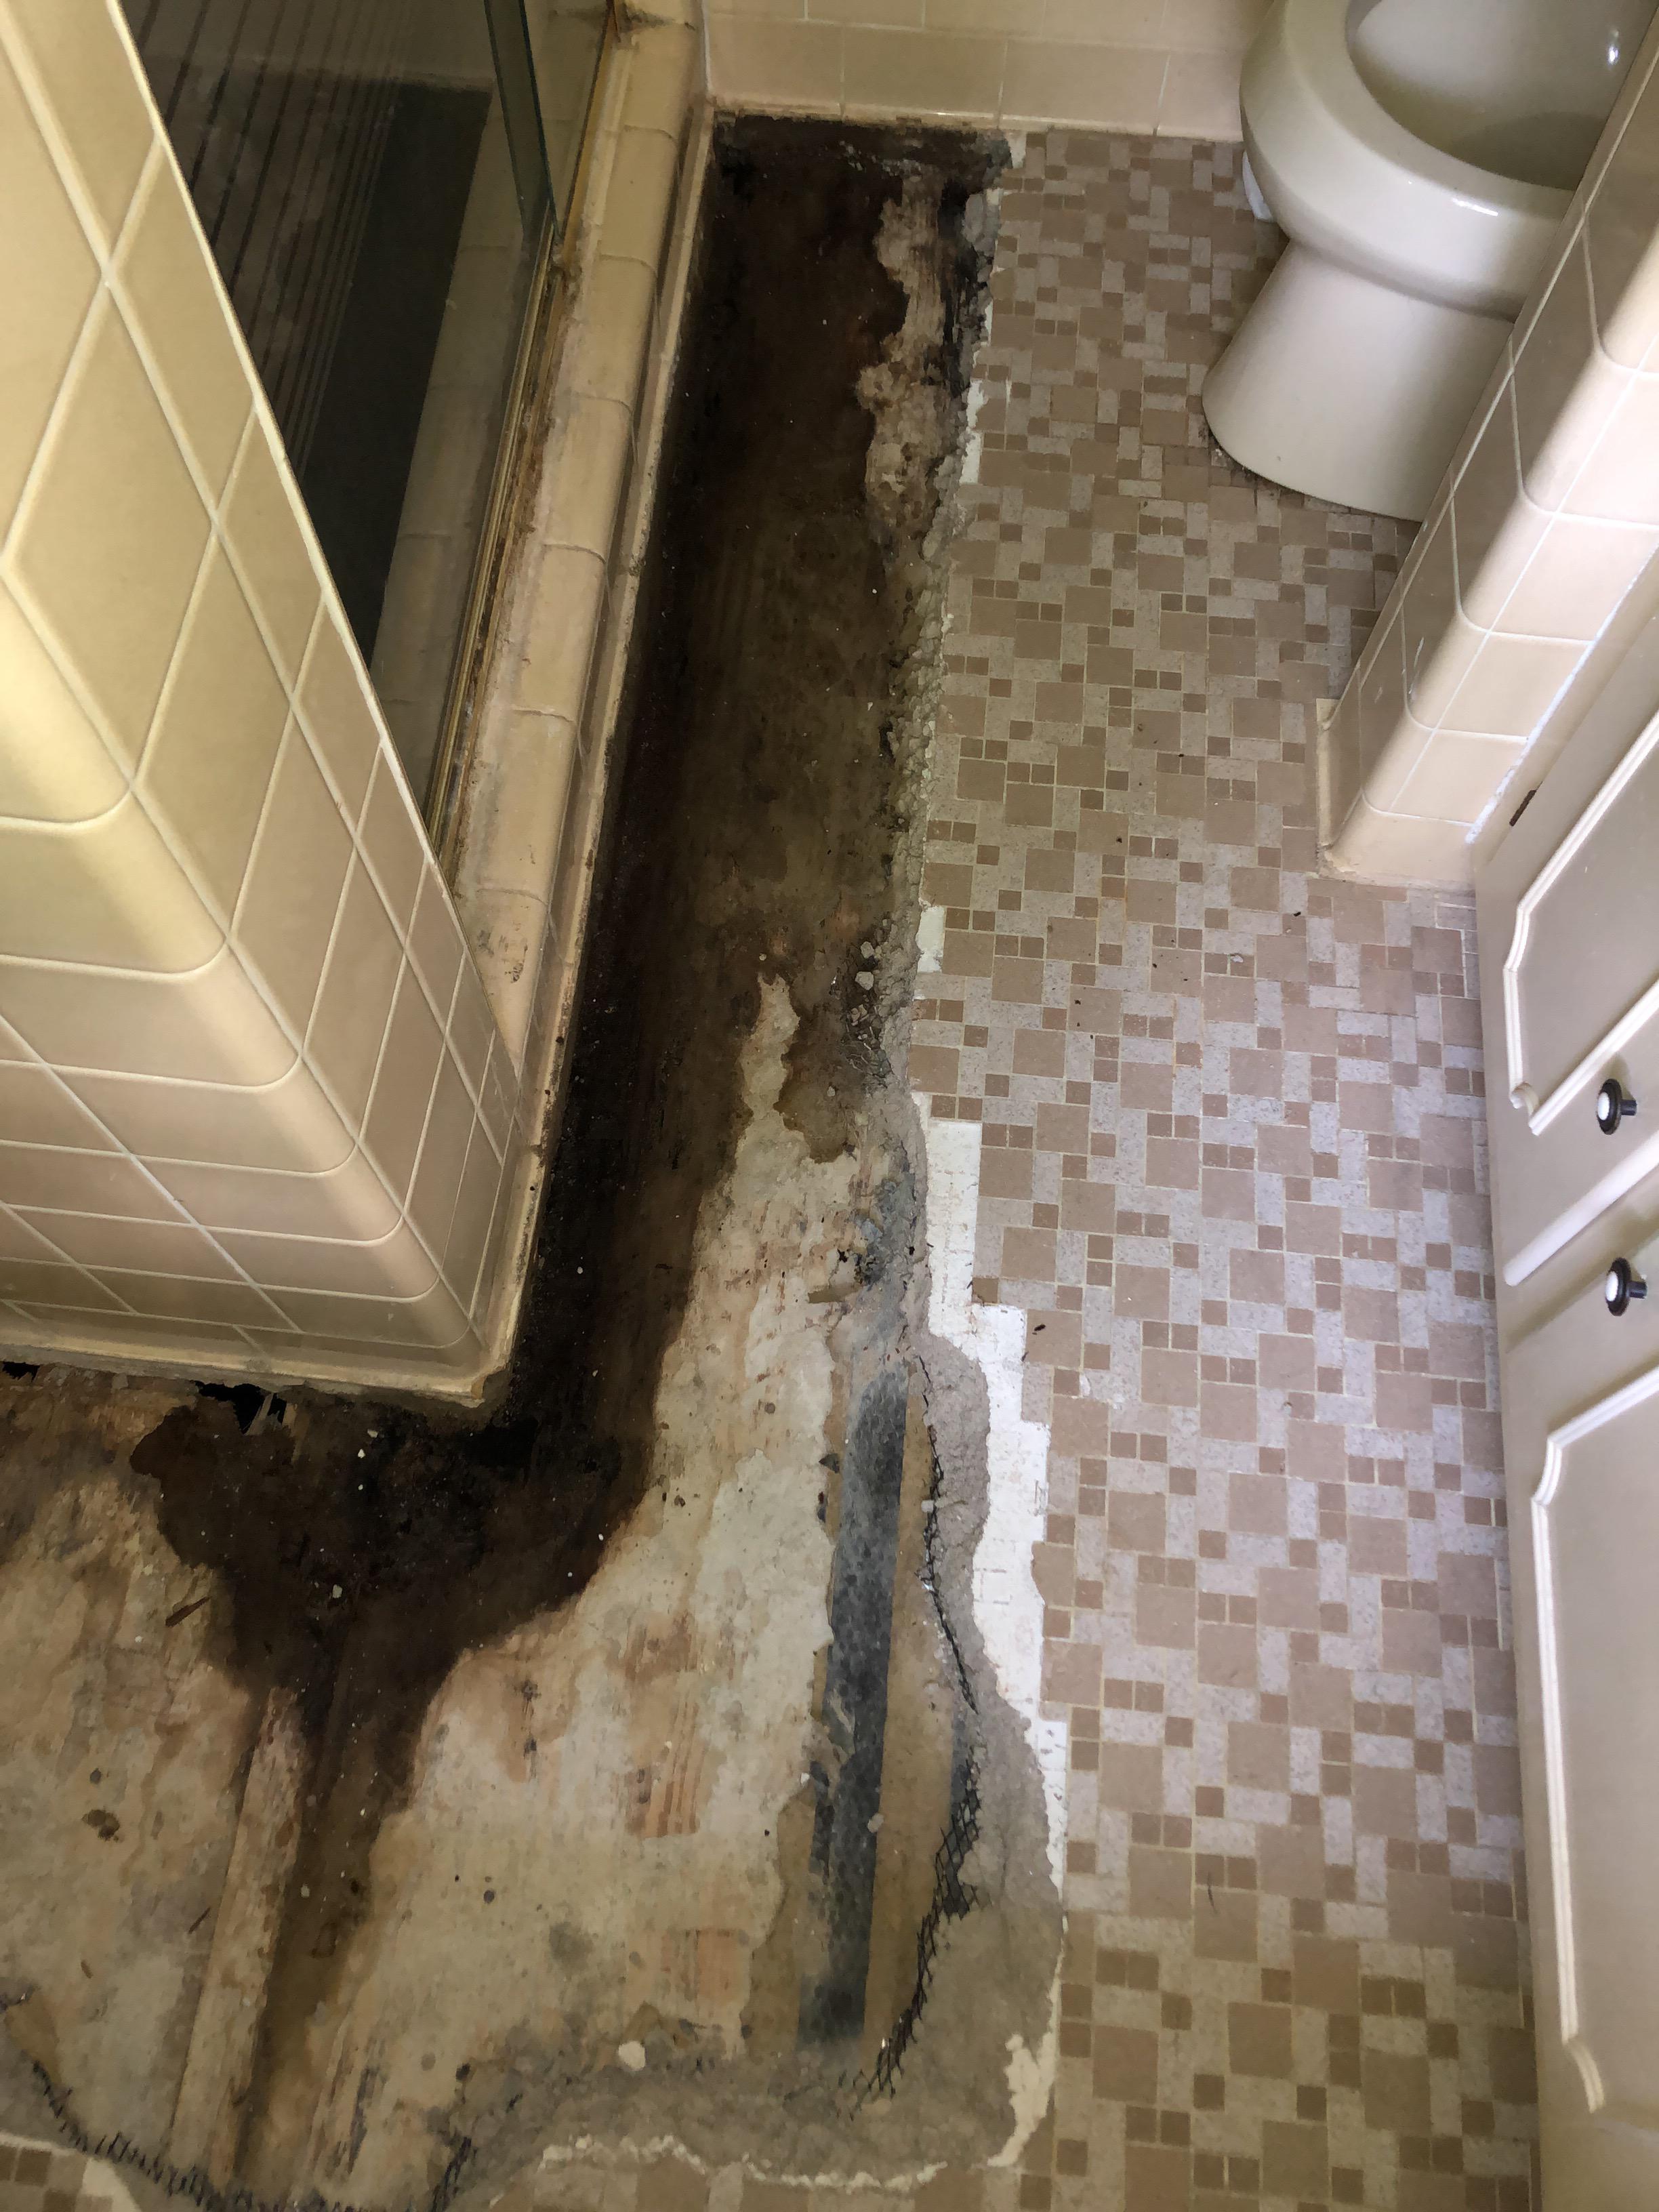 Water damage to floor under tiles